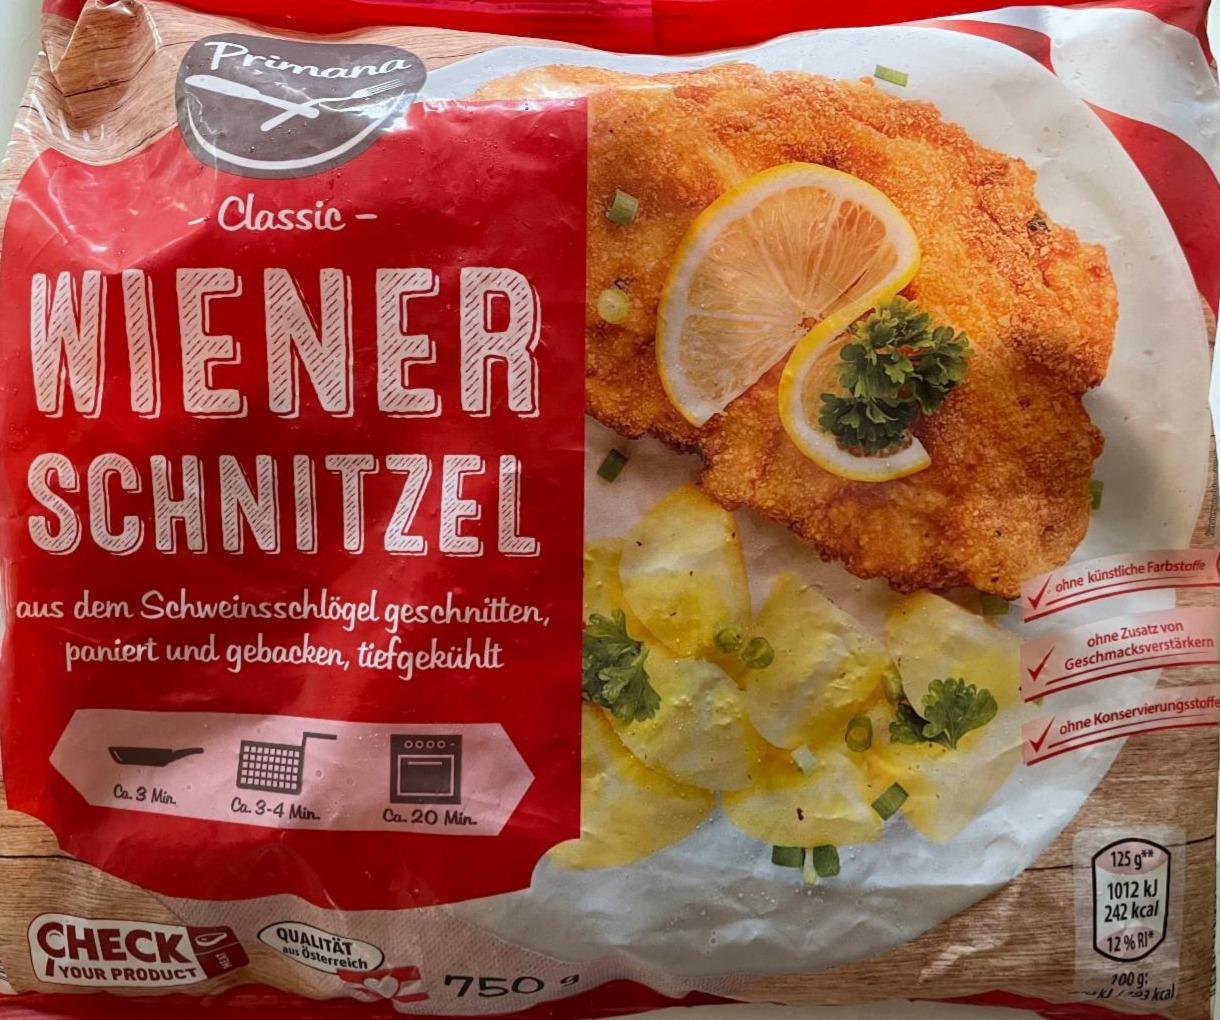 Fotografie - Wiener schnitzel classic Primana